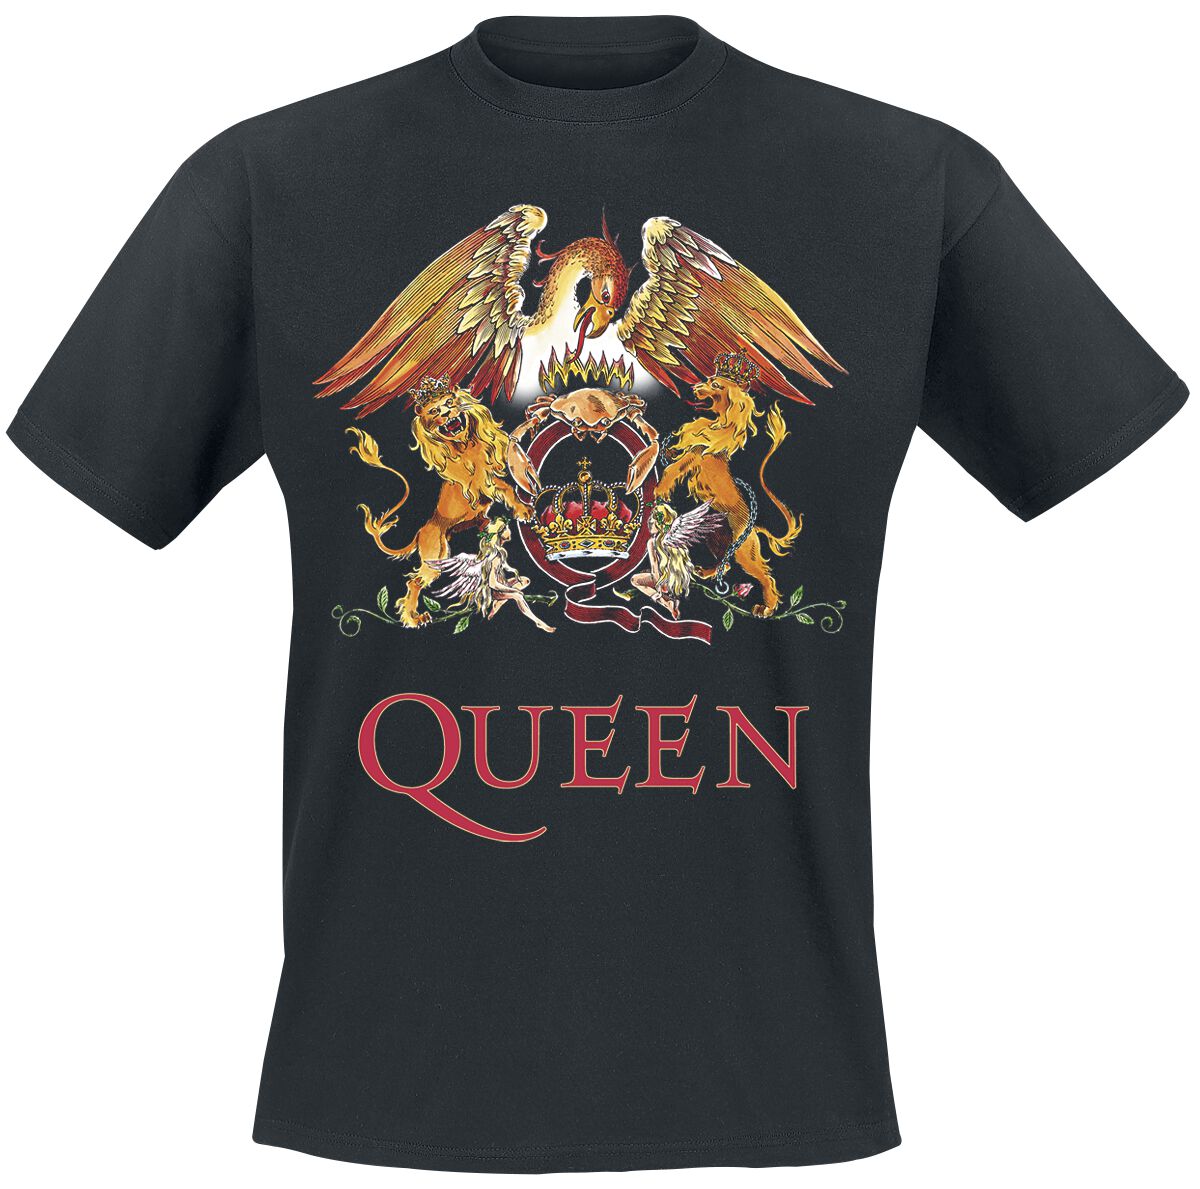 Queen T-Shirt - Crest Vintage - S bis 5XL - für Männer - Größe M - schwarz  - Lizenziertes Merchandise!